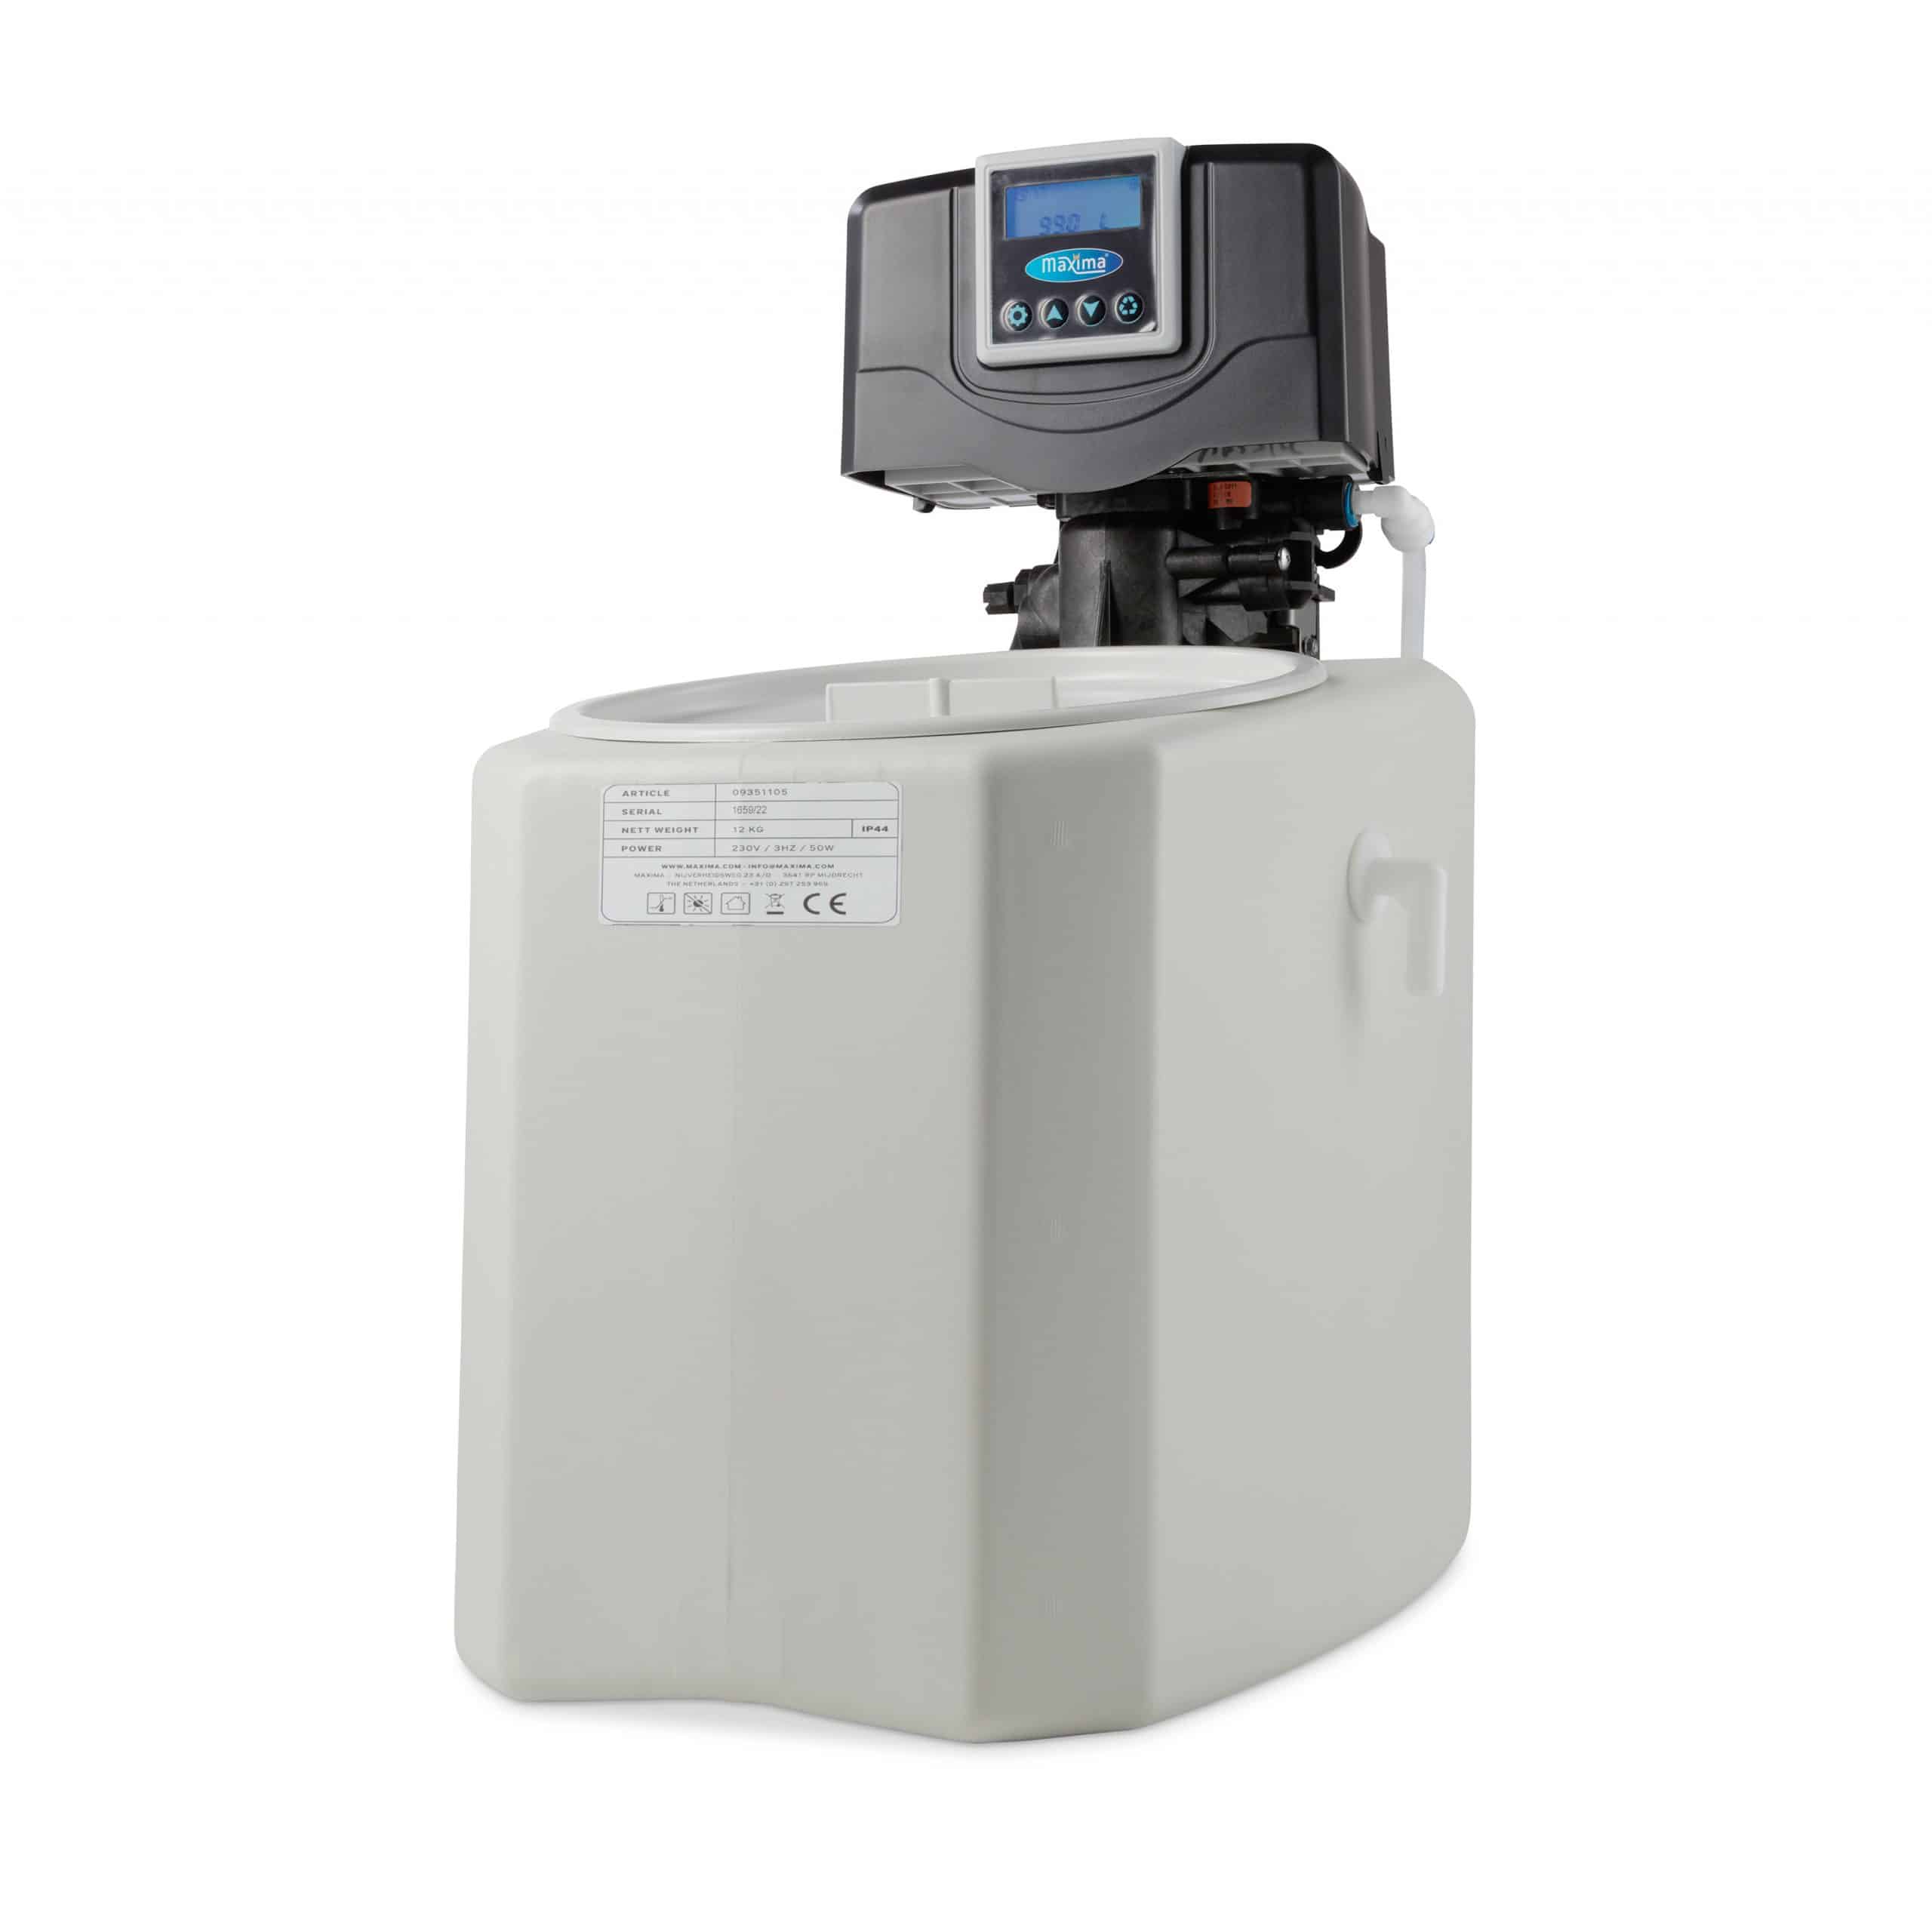 Automatikus vízlágyító - vízkőmentesítő - 7L gyanta - digitális kijelző | Maxima 09351105